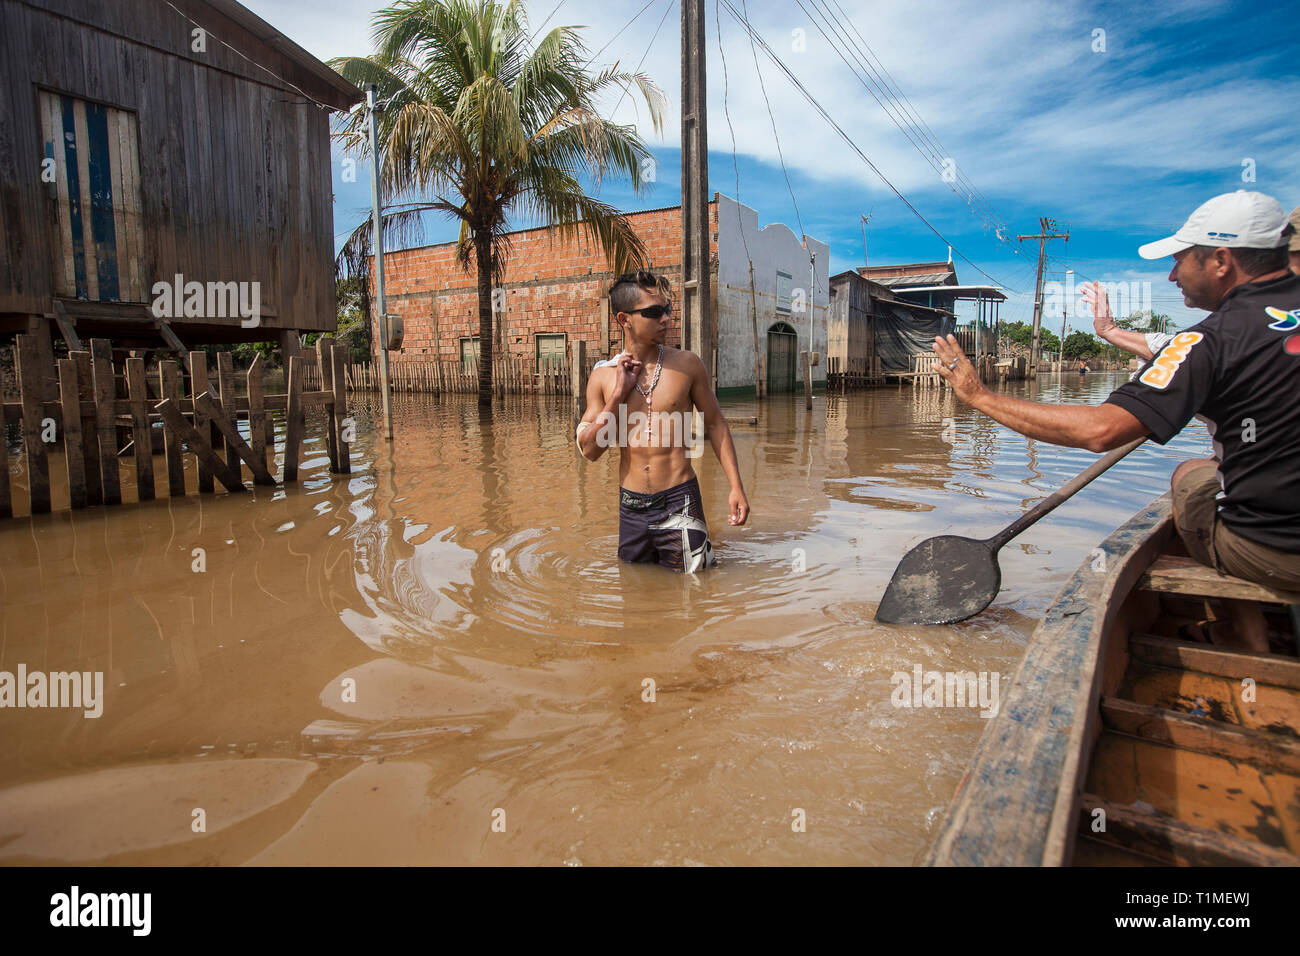 2015 Inondations en Amazonie brésilienne, Taquari, district de la ville de Rio Branco, l'état d'Acre. Les inondations ont touché des milliers de personnes dans l'Etat d'Acre, dans le nord du Brésil, depuis le 23 février 2015, lorsque certaines des rivières de l'état, en particulier l'Acre, la rivière a débordé. De plus fortes précipitations a forcé les niveaux de la rivière plus haut encore, et le 03 mars 2015, le gouvernement fédéral du Brésil a déclaré l'état d'urgence dans l'état d'Acre, où les conditions d'inondations situation a été décrite comme la pire en 132 ans. Banque D'Images